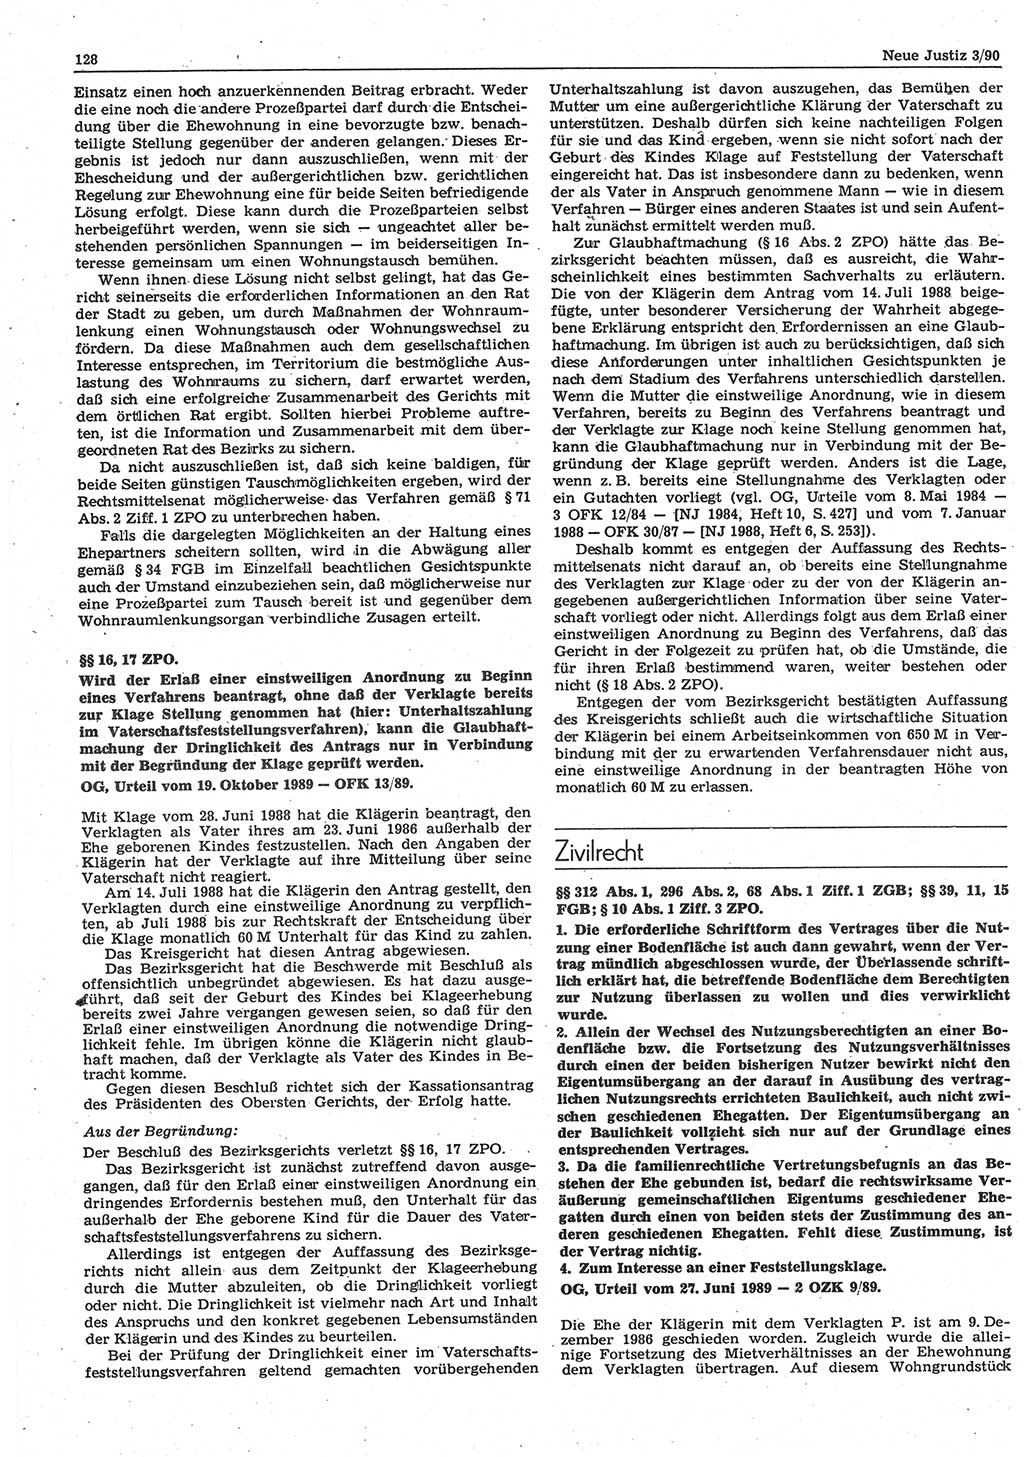 Neue Justiz (NJ), Zeitschrift für Rechtsetzung und Rechtsanwendung [Deutsche Demokratische Republik (DDR)], 44. Jahrgang 1990, Seite 128 (NJ DDR 1990, S. 128)